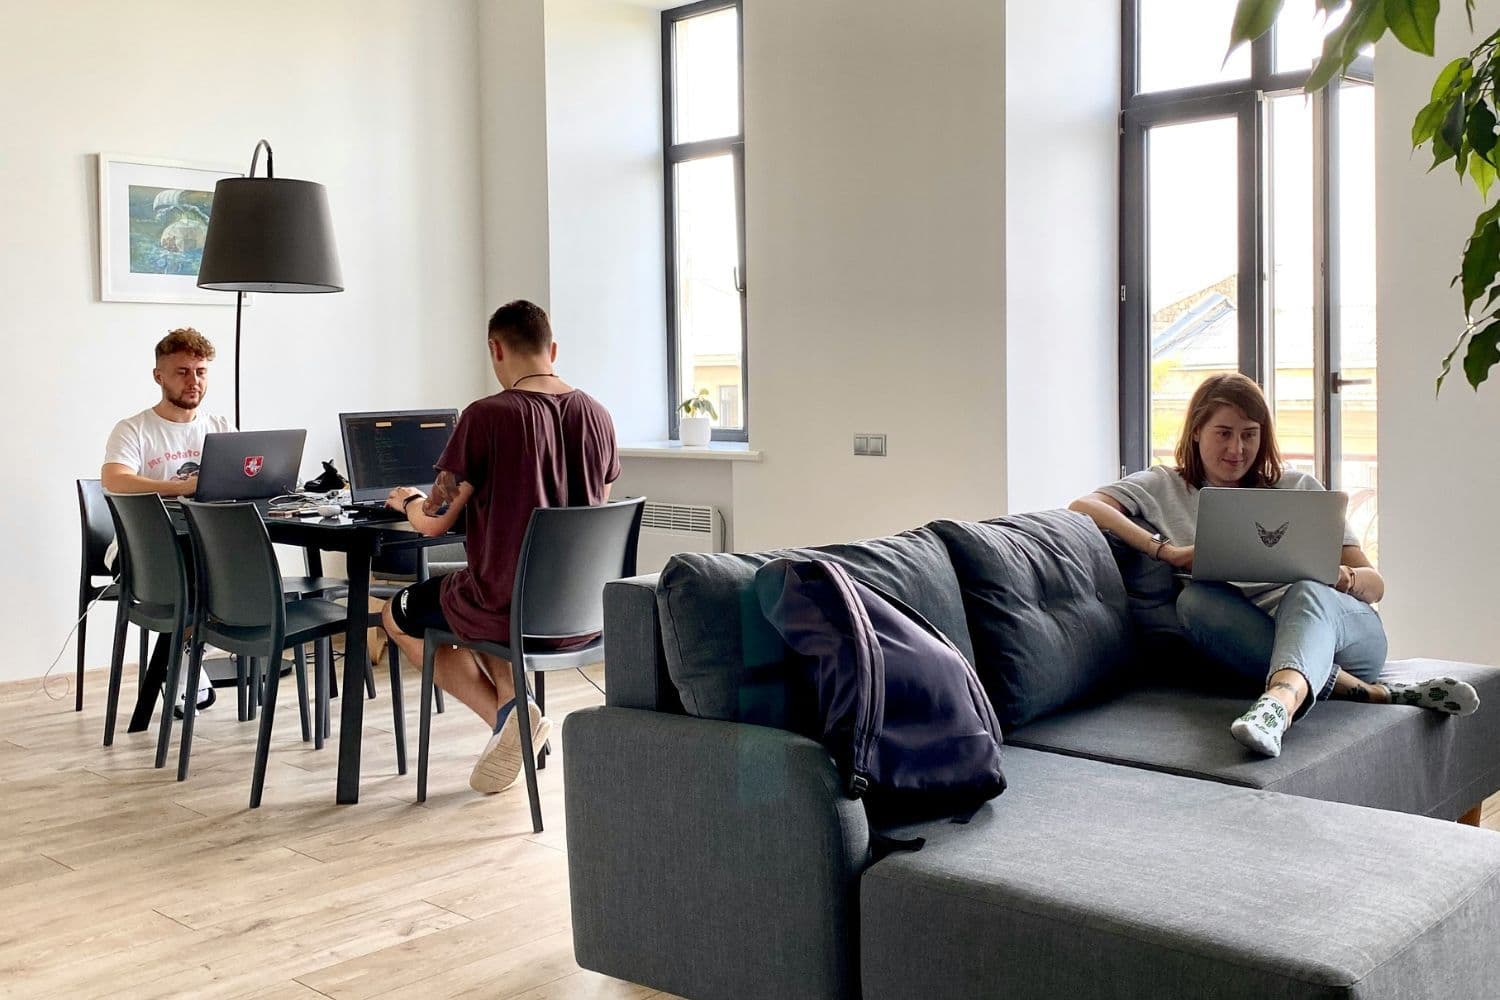 Trois jeunes personnes en colocation dans un grand appartement, occupées sur des ordinateurs